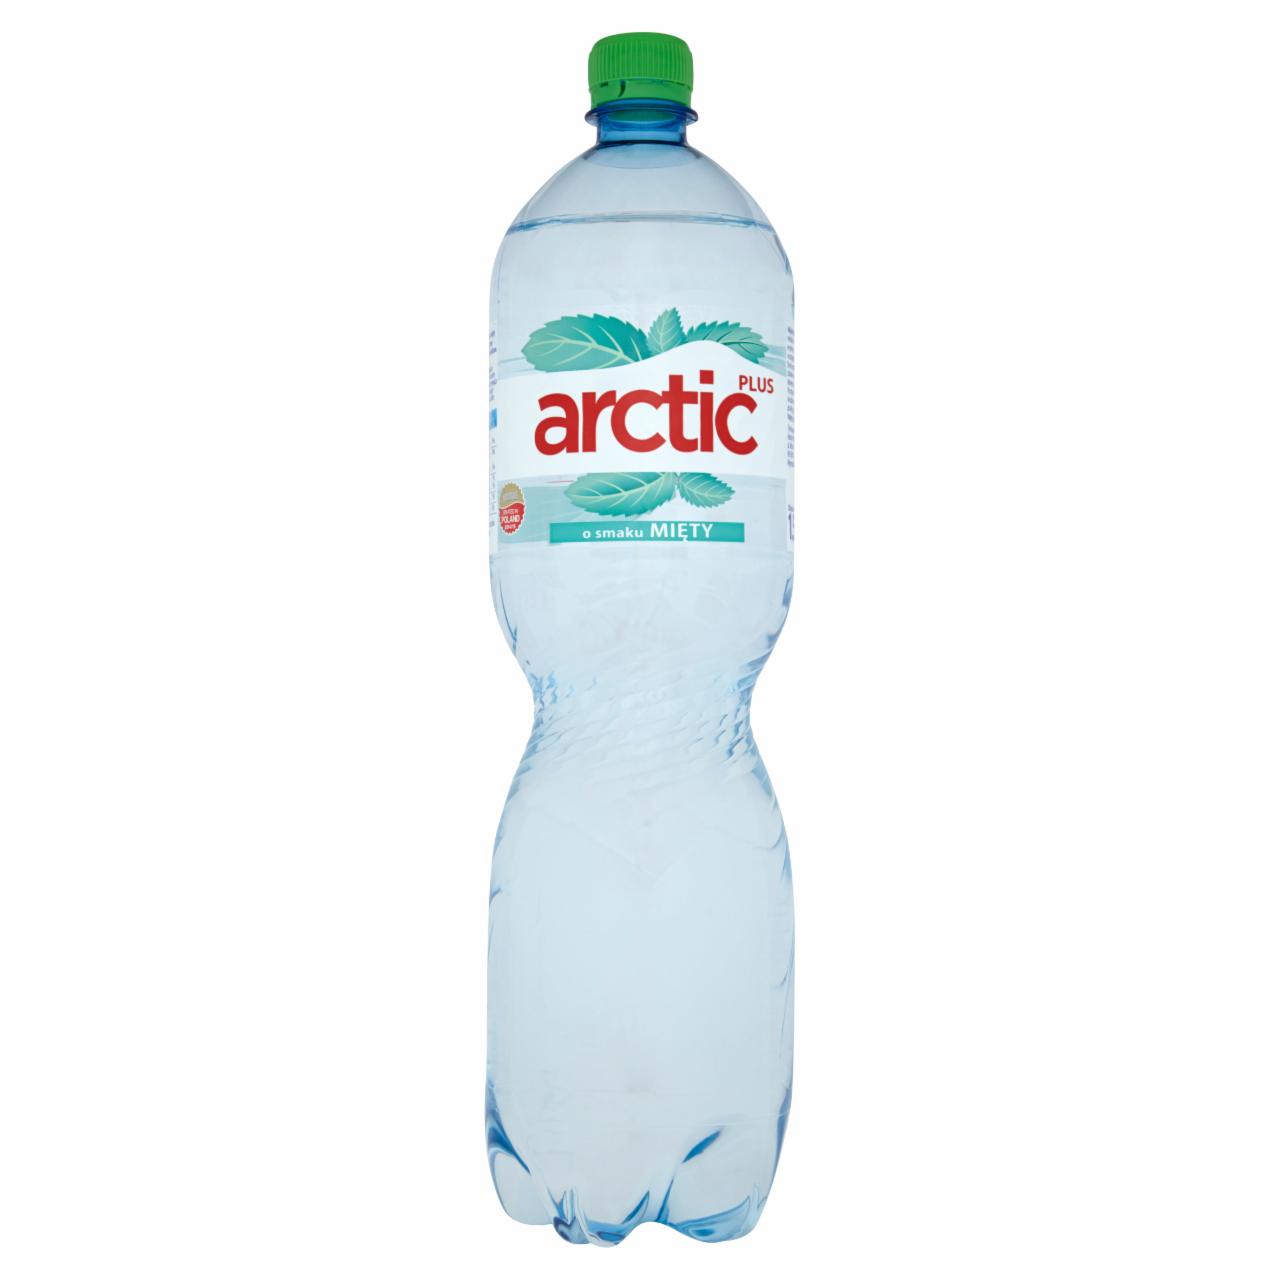 Zdjęcia - Arctic Plus o smaku mięty Napój niegazowany 1,5 l